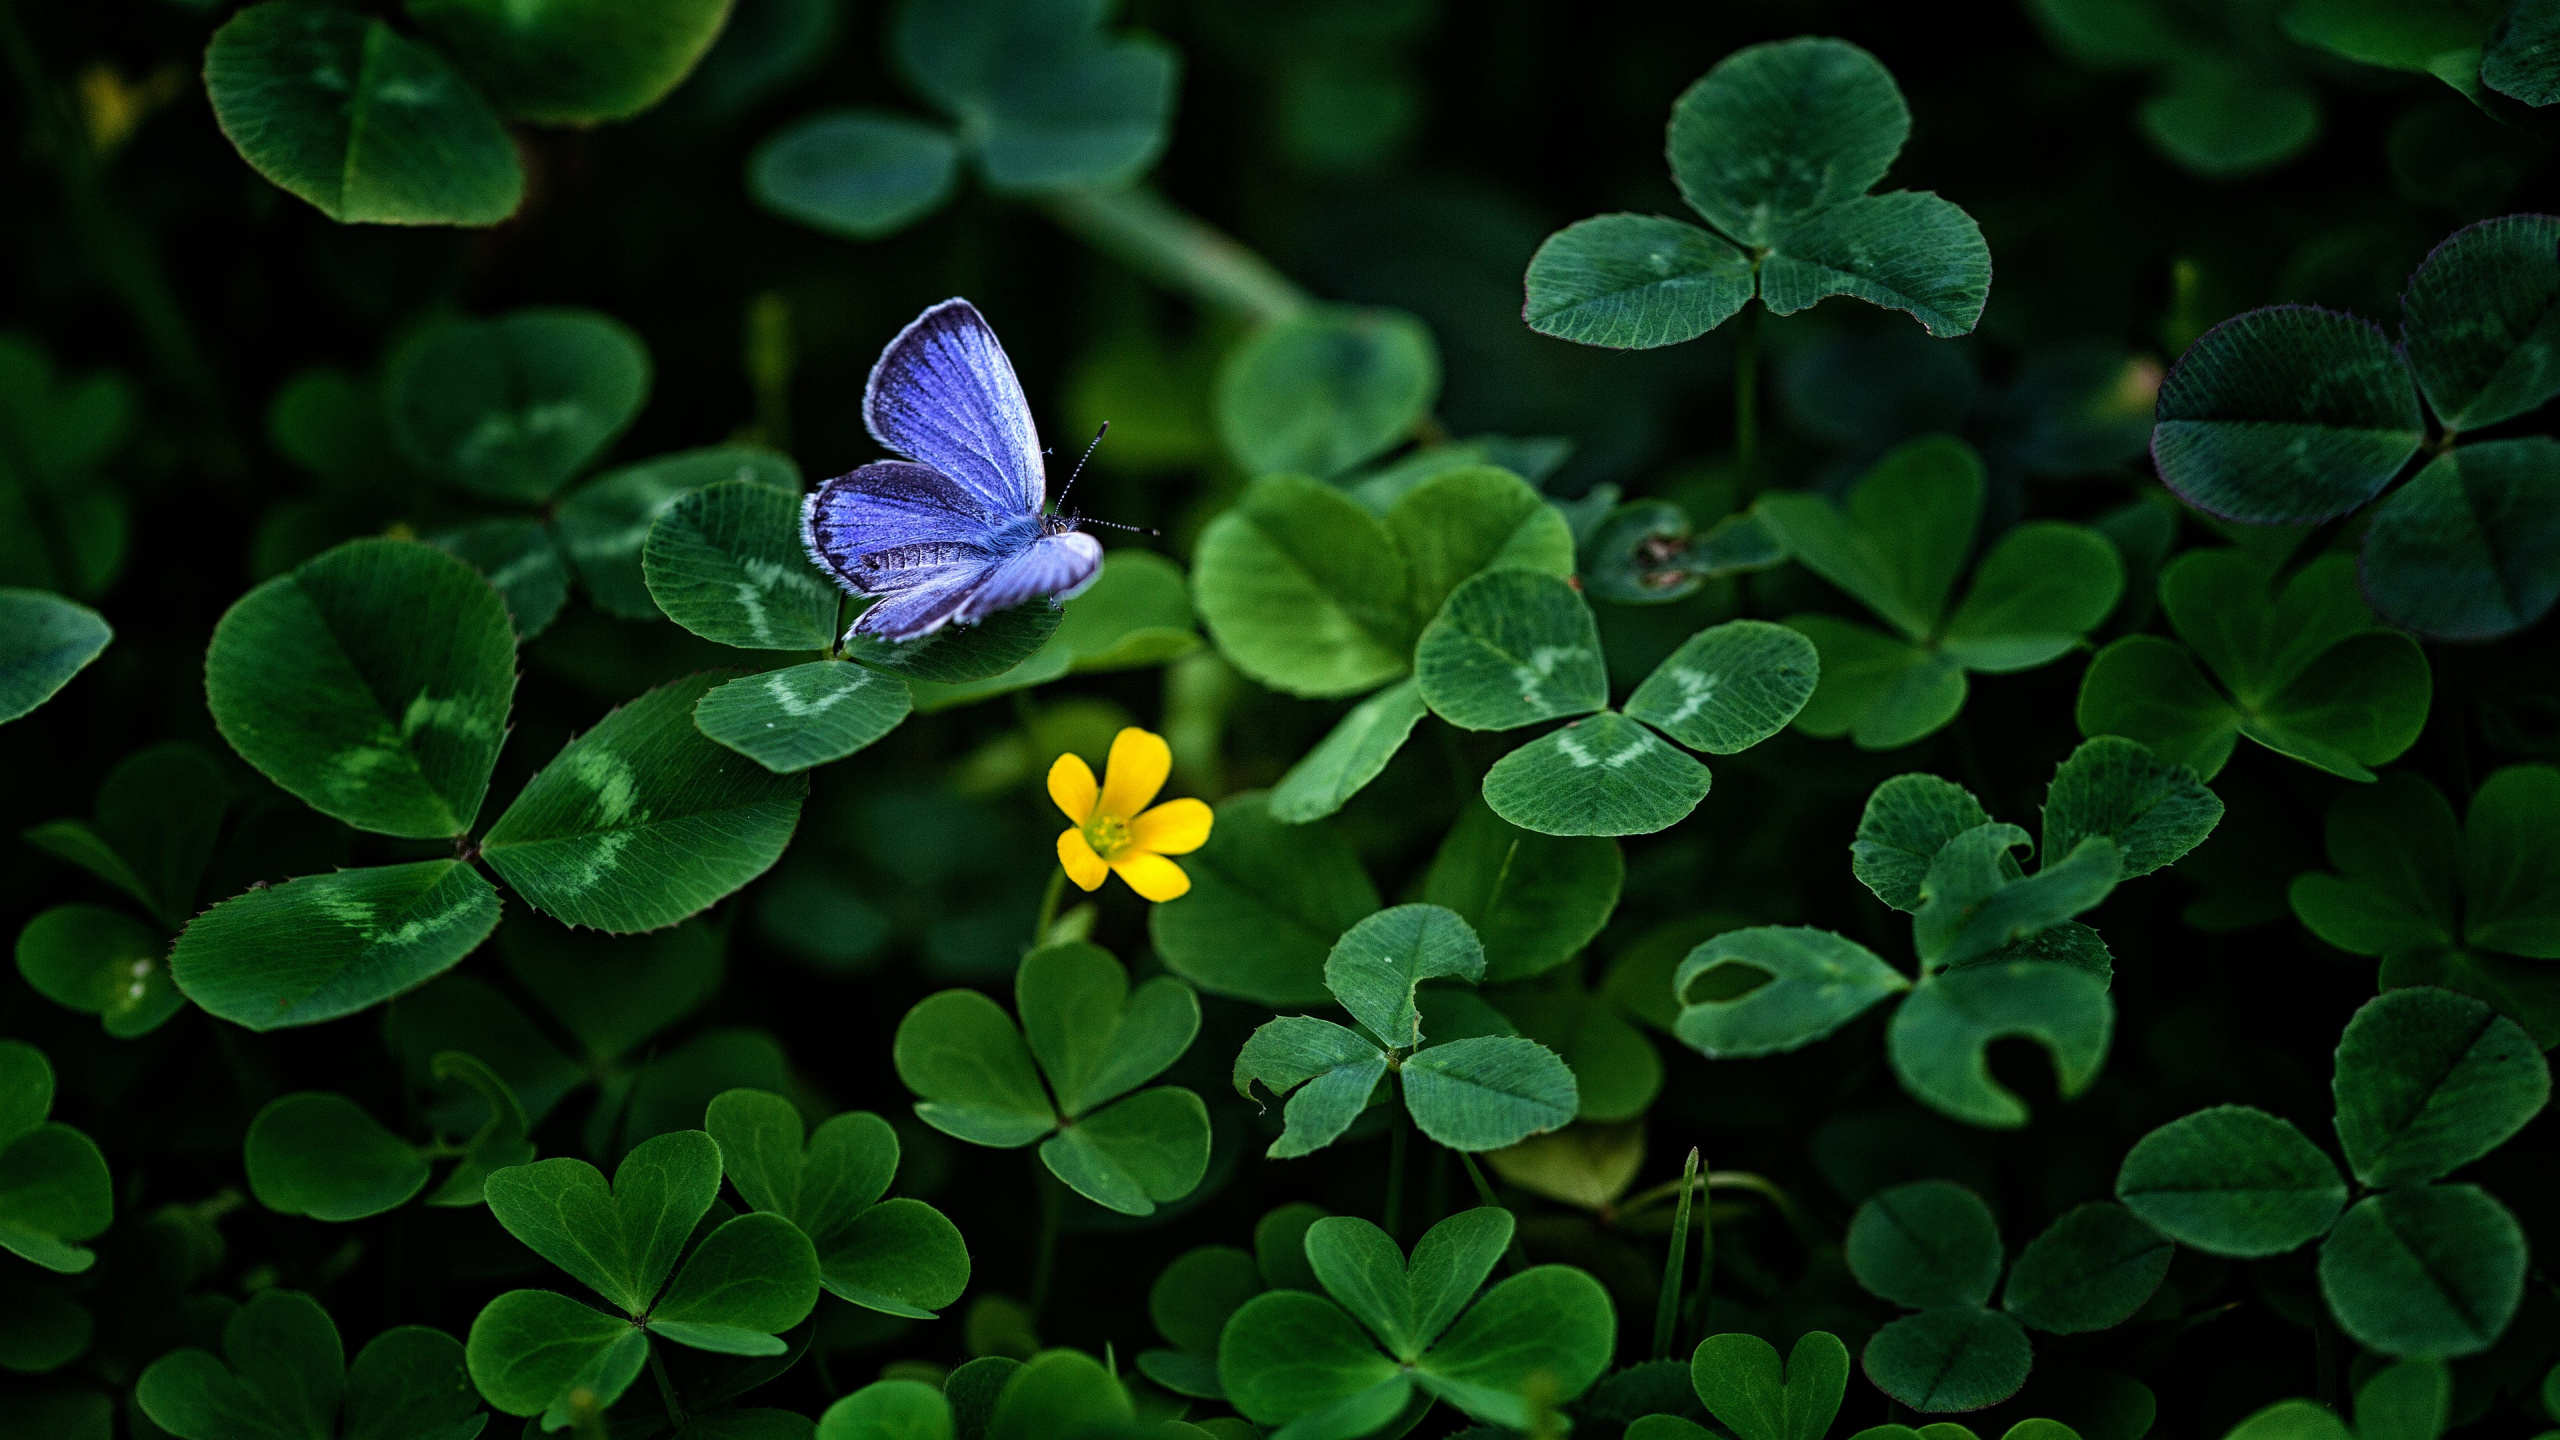 Blauer Schmetterling Thront Auf Gelber Blume in Nahaufnahmen Tagsüber. Wallpaper in 2560x1440 Resolution